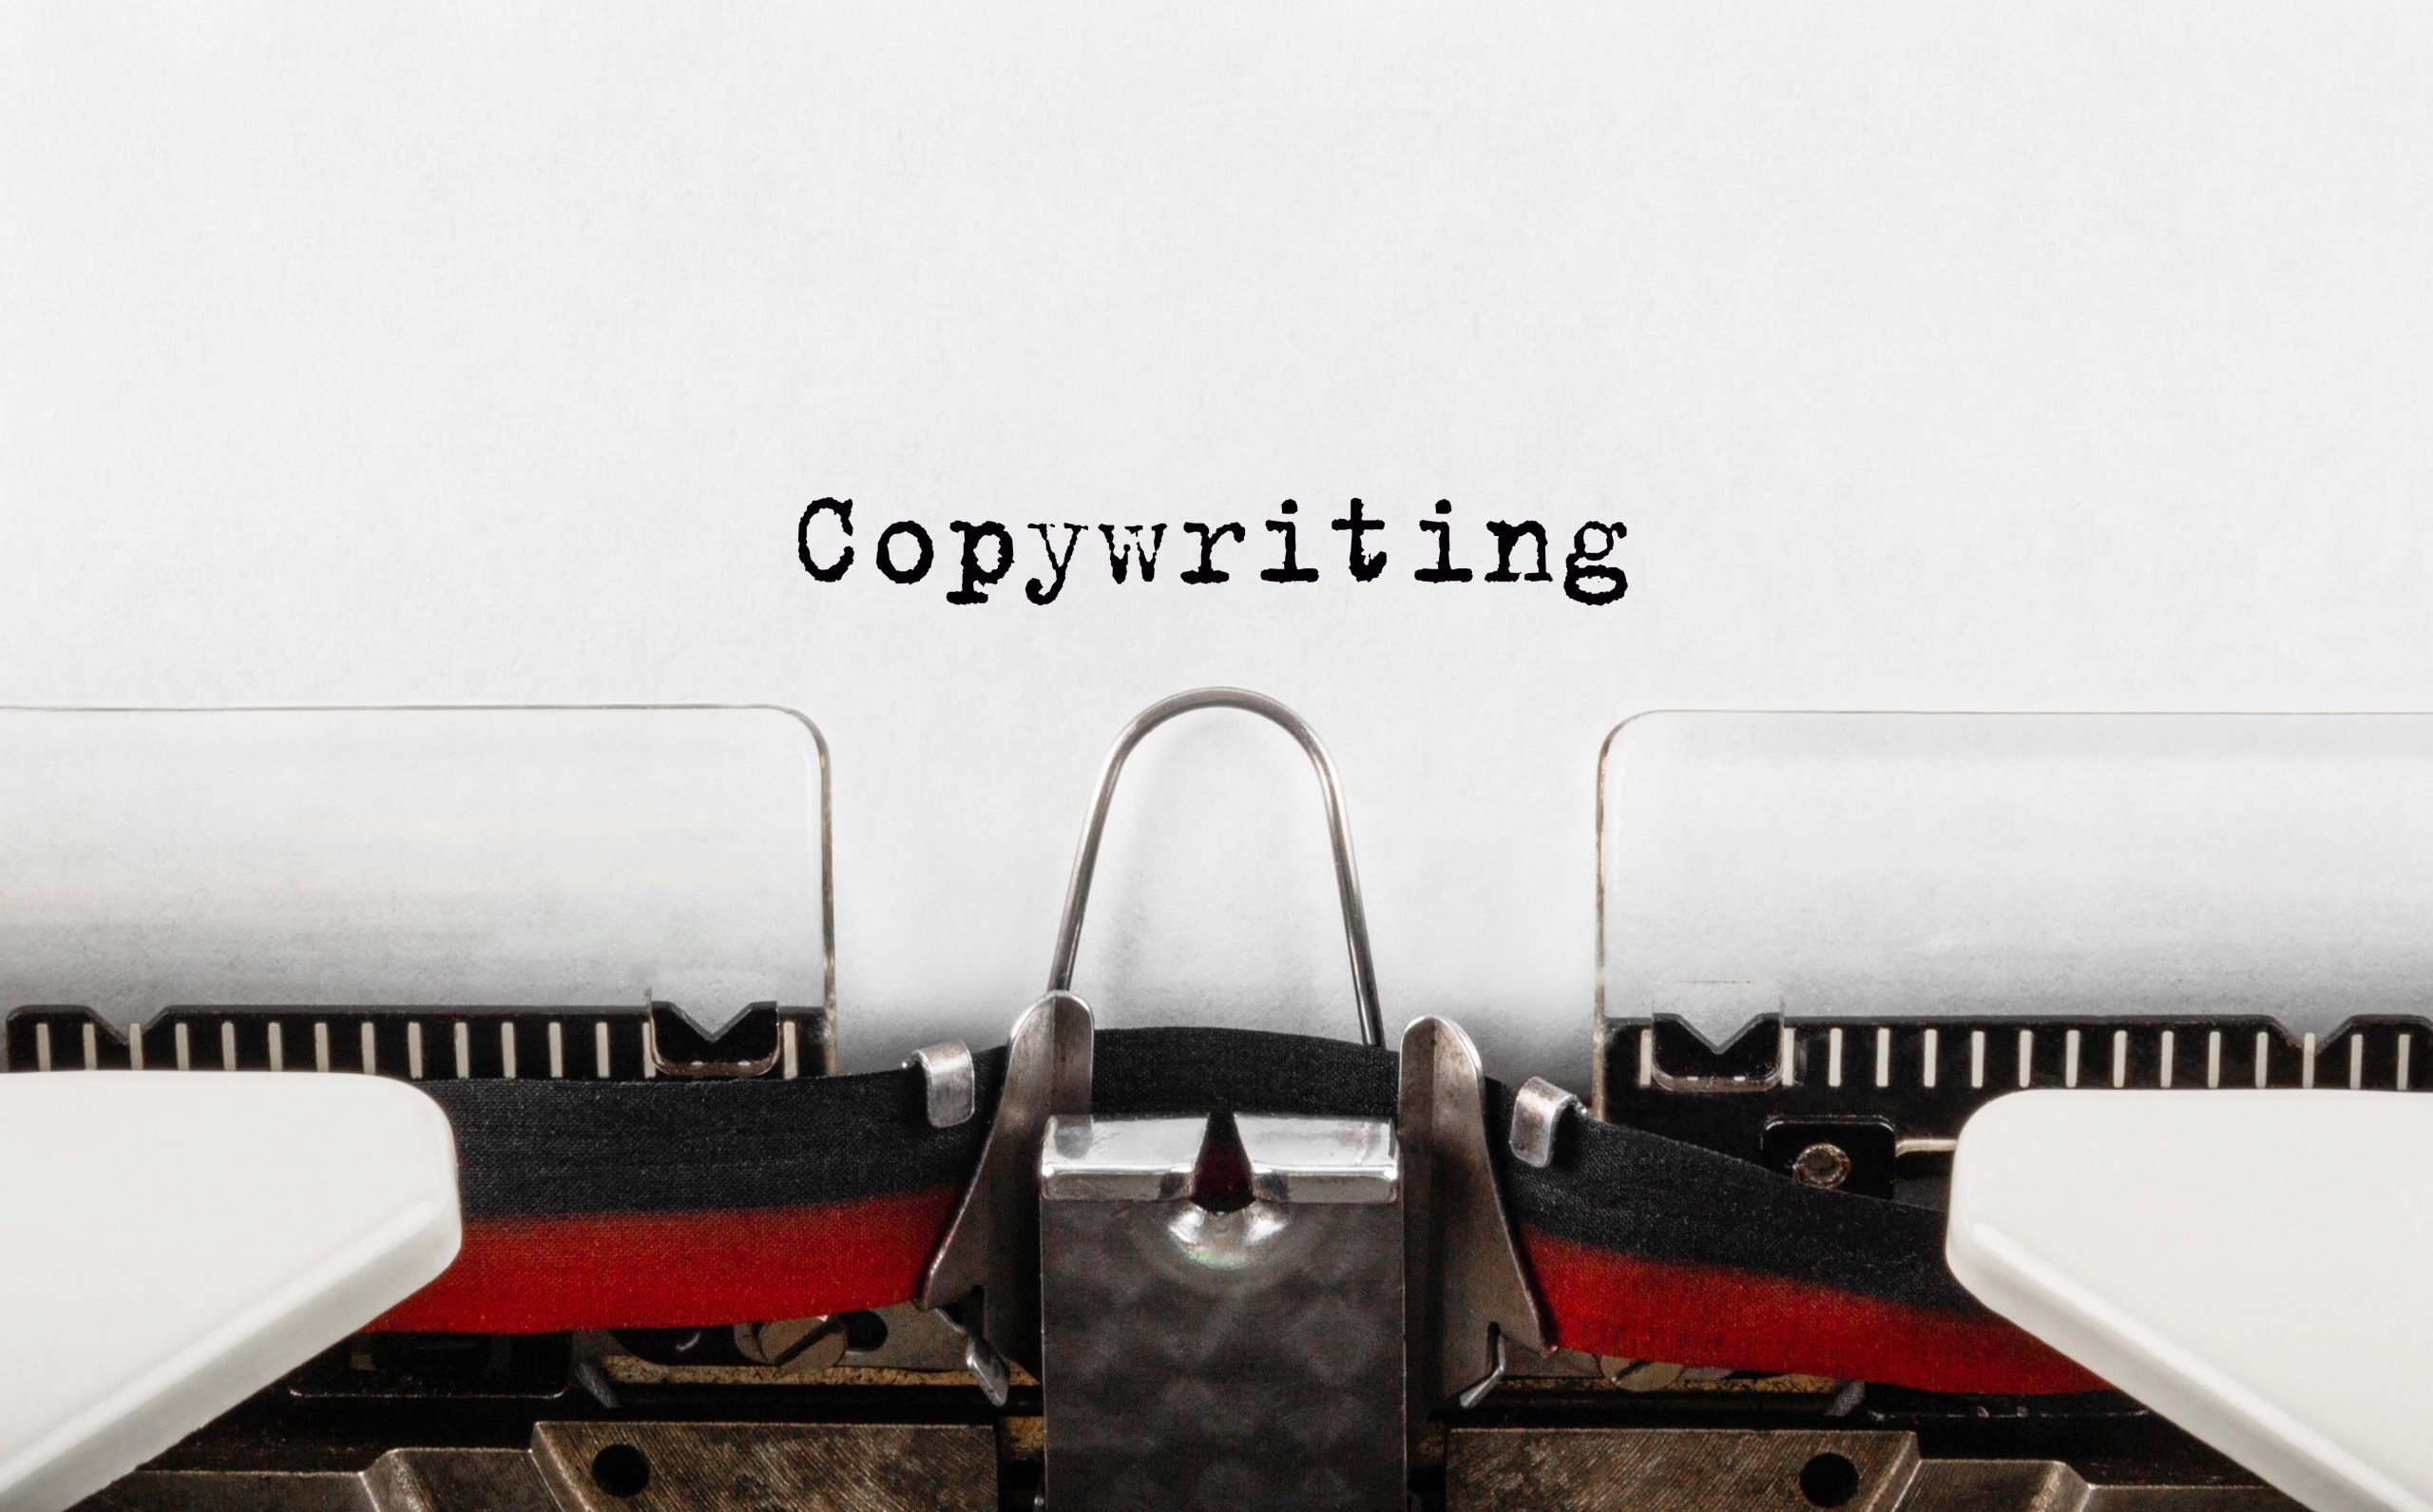 Découvrez la technique de copywriting qui fonctionne Meta description : L’astuce de copywriting pour toucher sa cible e